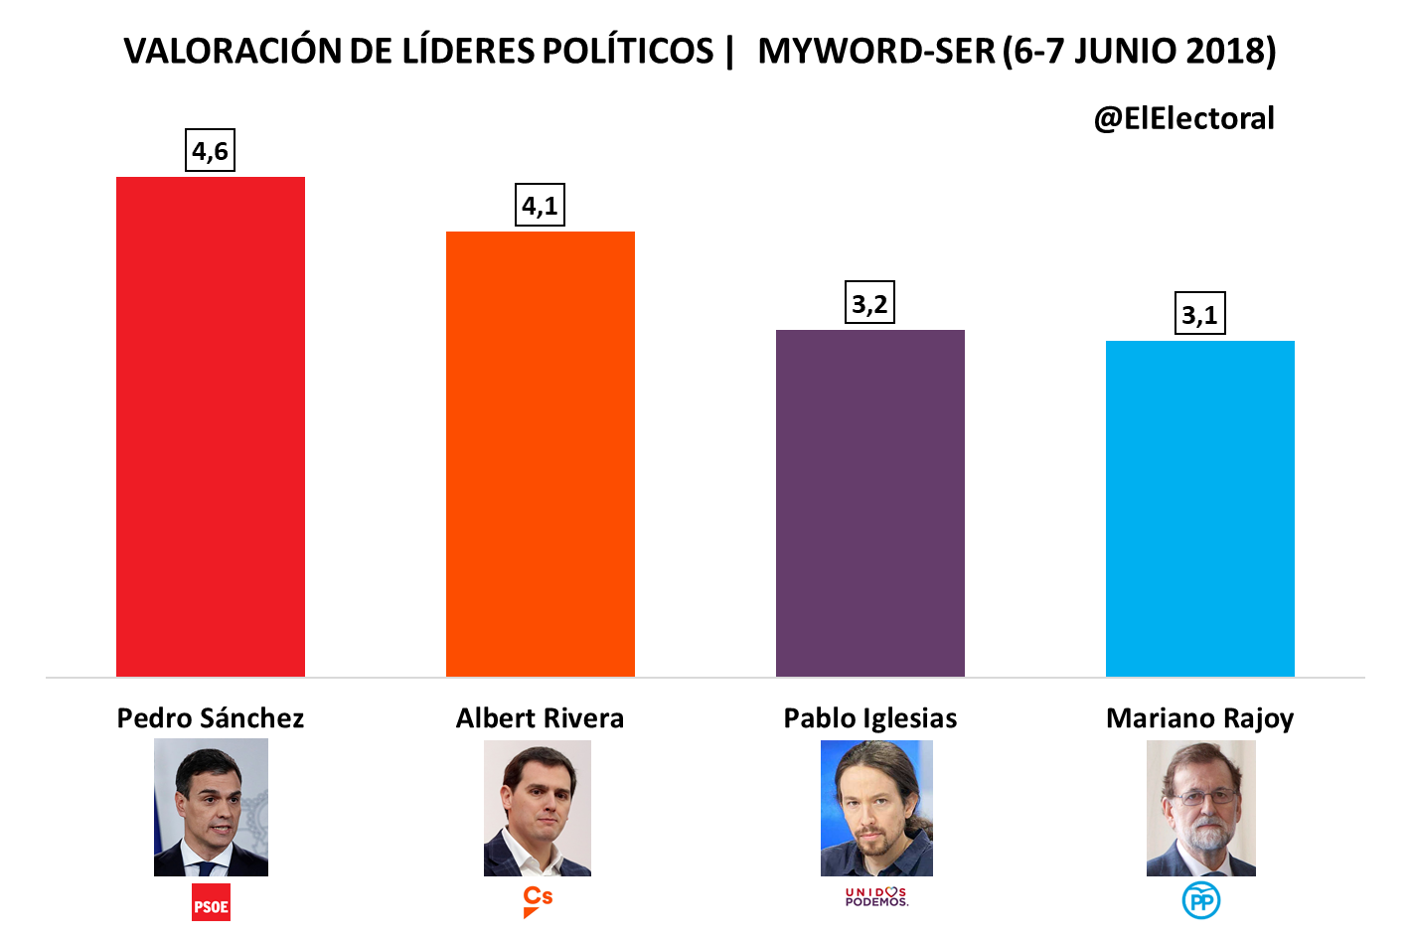 El presidente Pedro Sánchez es el líder político mejor valorado con un 4,6, según MyWord